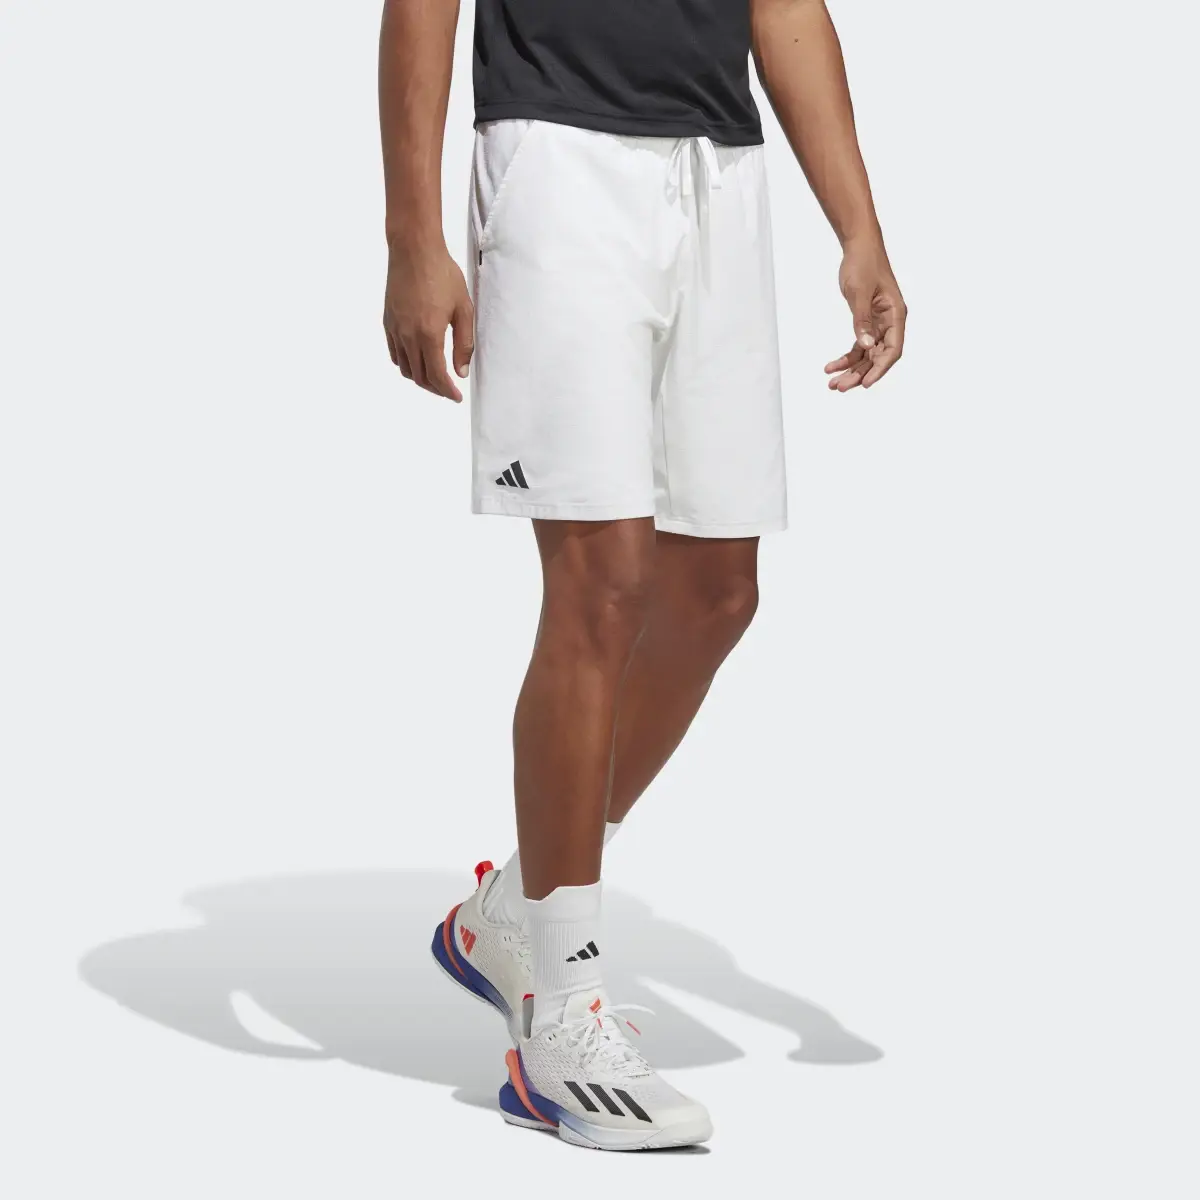 Adidas Ergo Tennis Shorts. 1